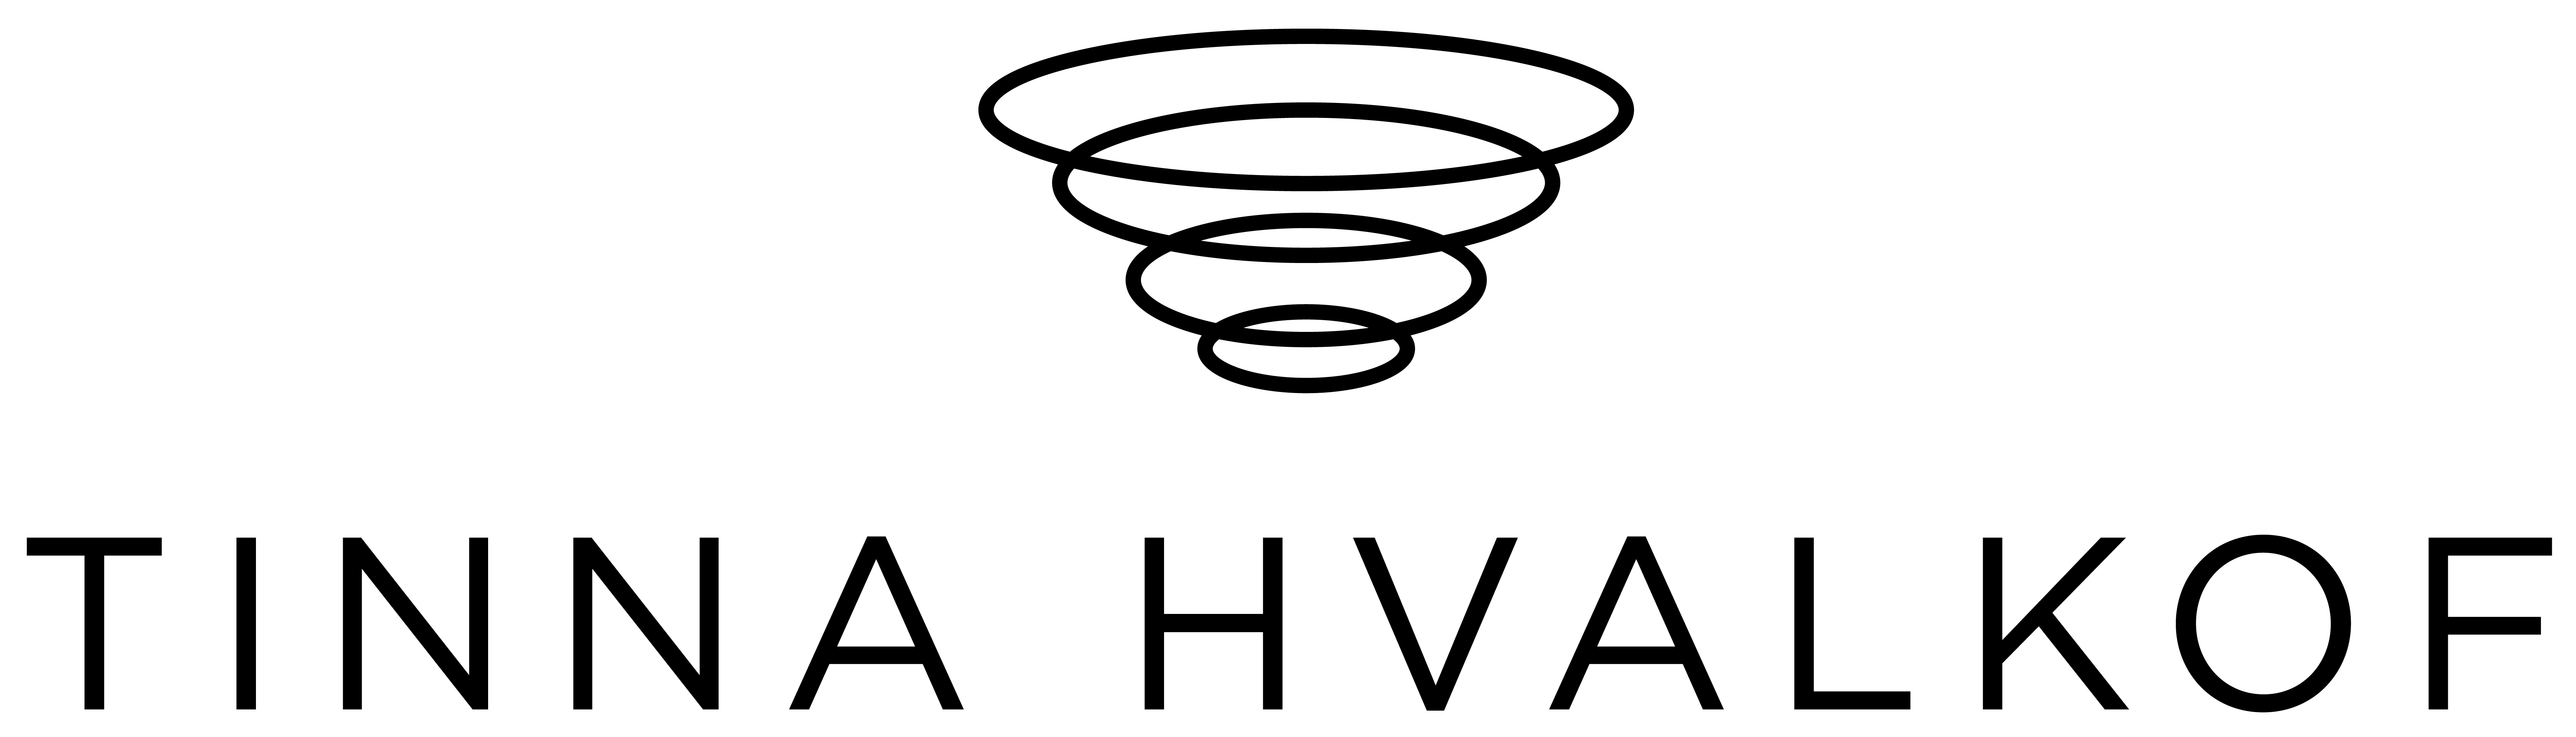 tinnahvalkof logo